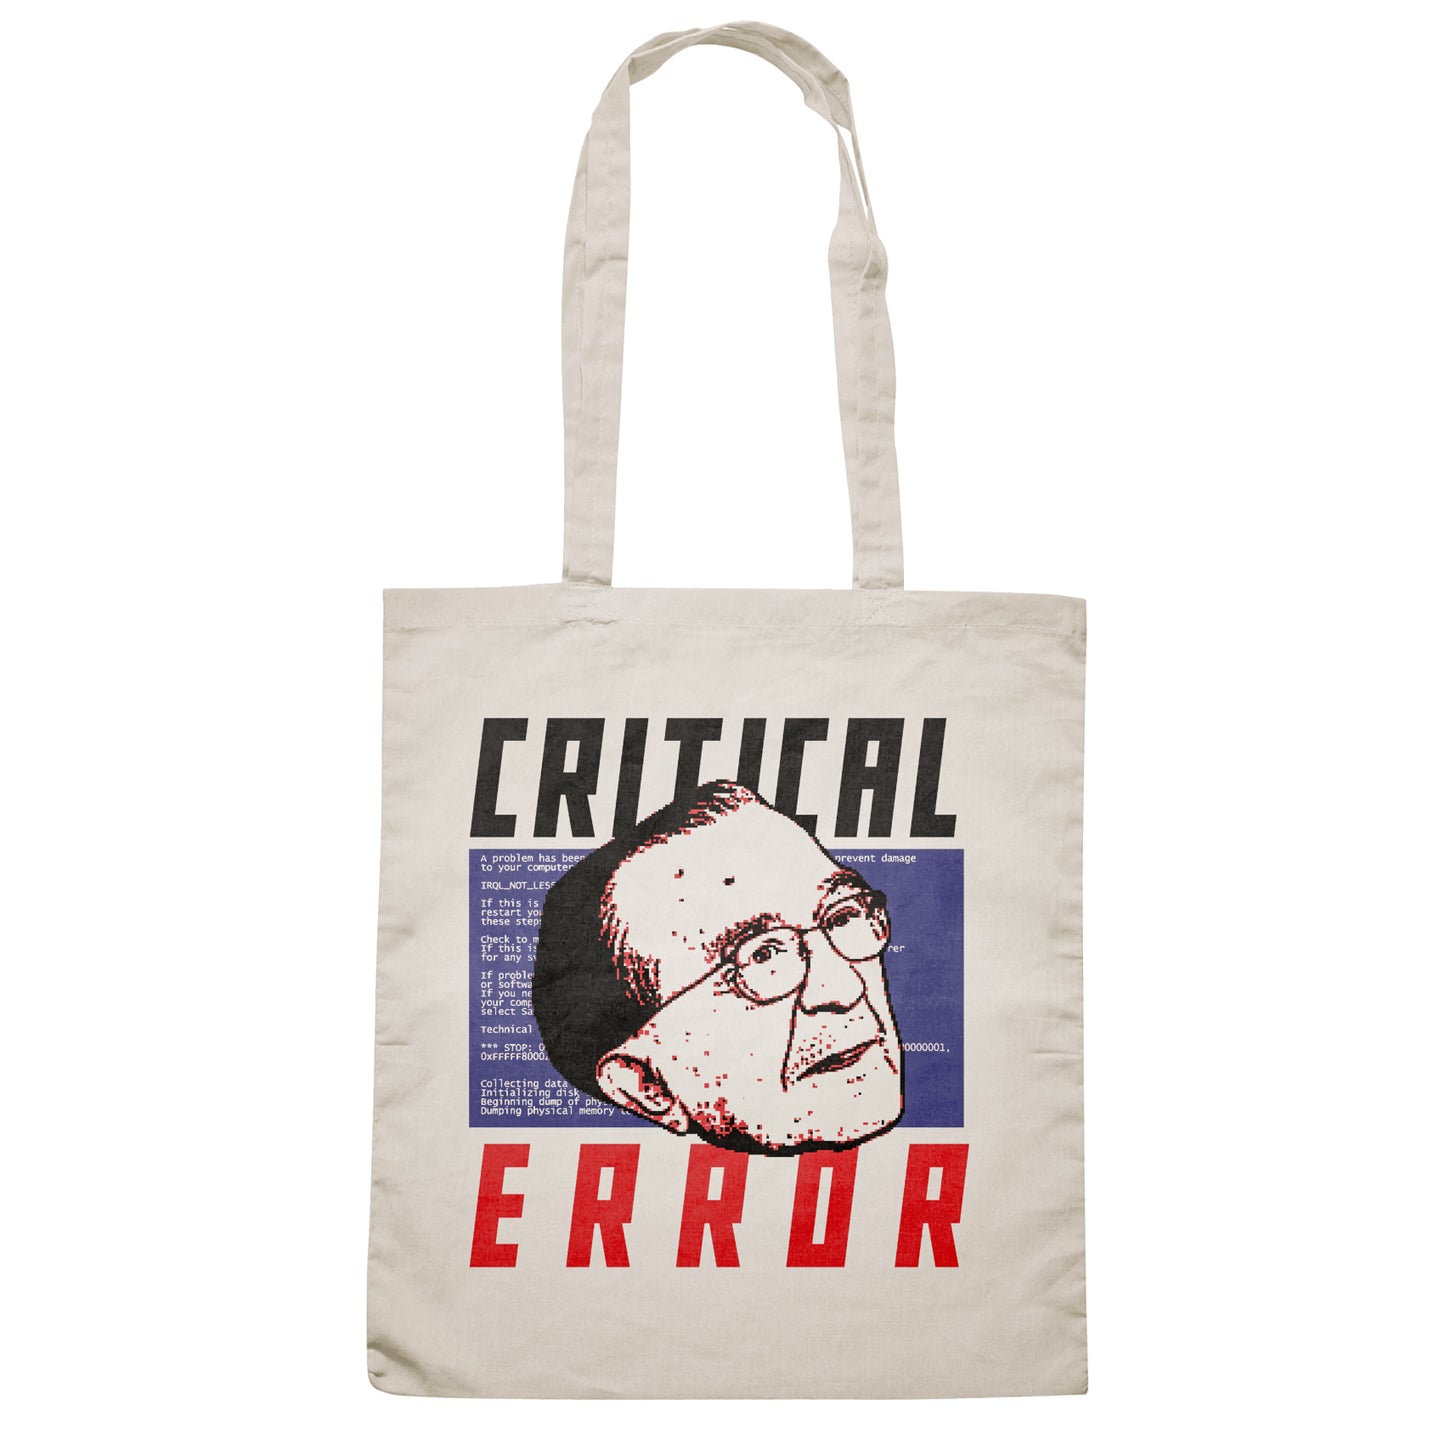 CUC BAG CRITICAL ERROR - Andreotti - Presidente  #chooseurcolor